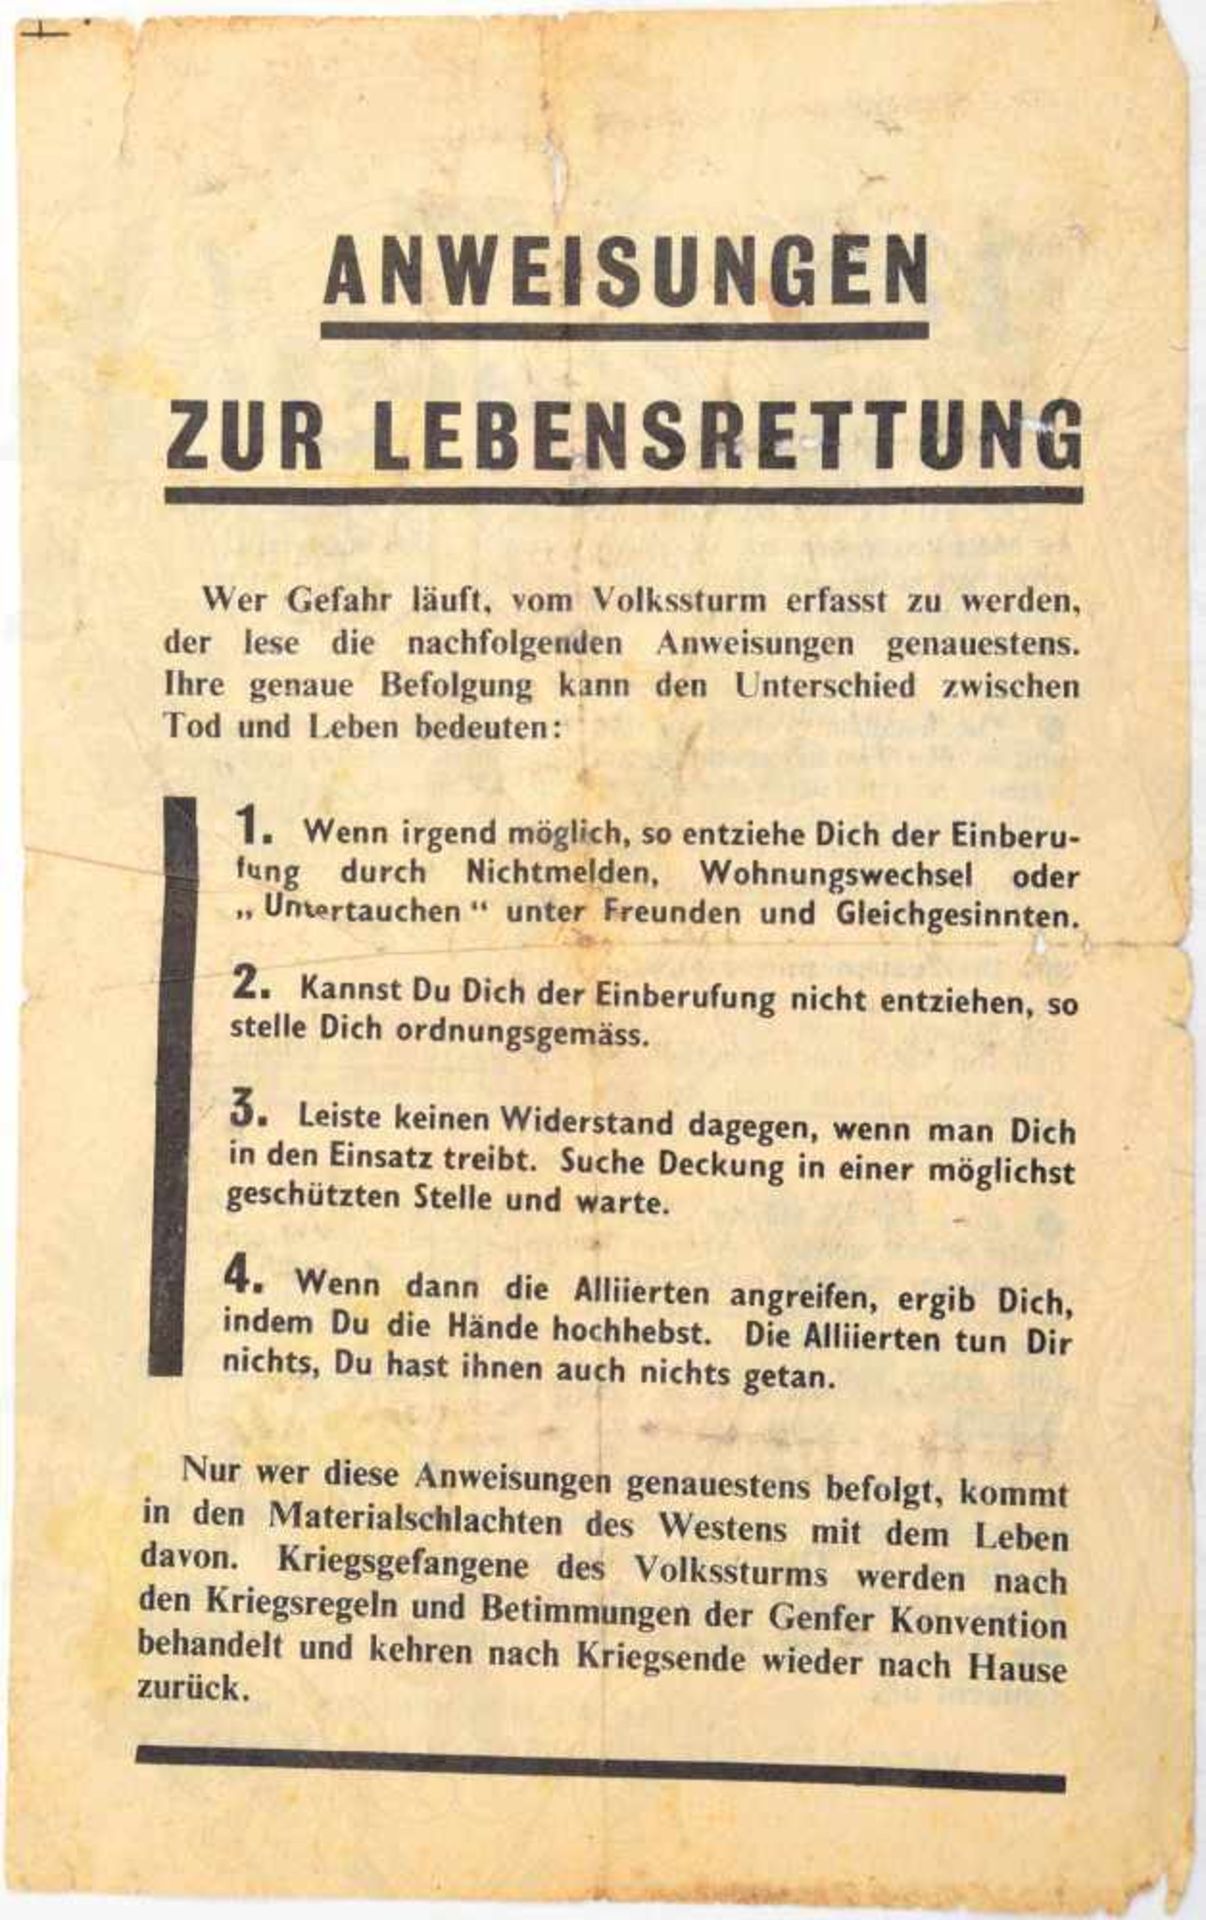 ALLIIERTES FLUGBLATT „VOLKSSTURM IM EINSATZ“, Dez. 1944, Bericht zum ersten Kampf d. Volkssturm in - Bild 2 aus 2